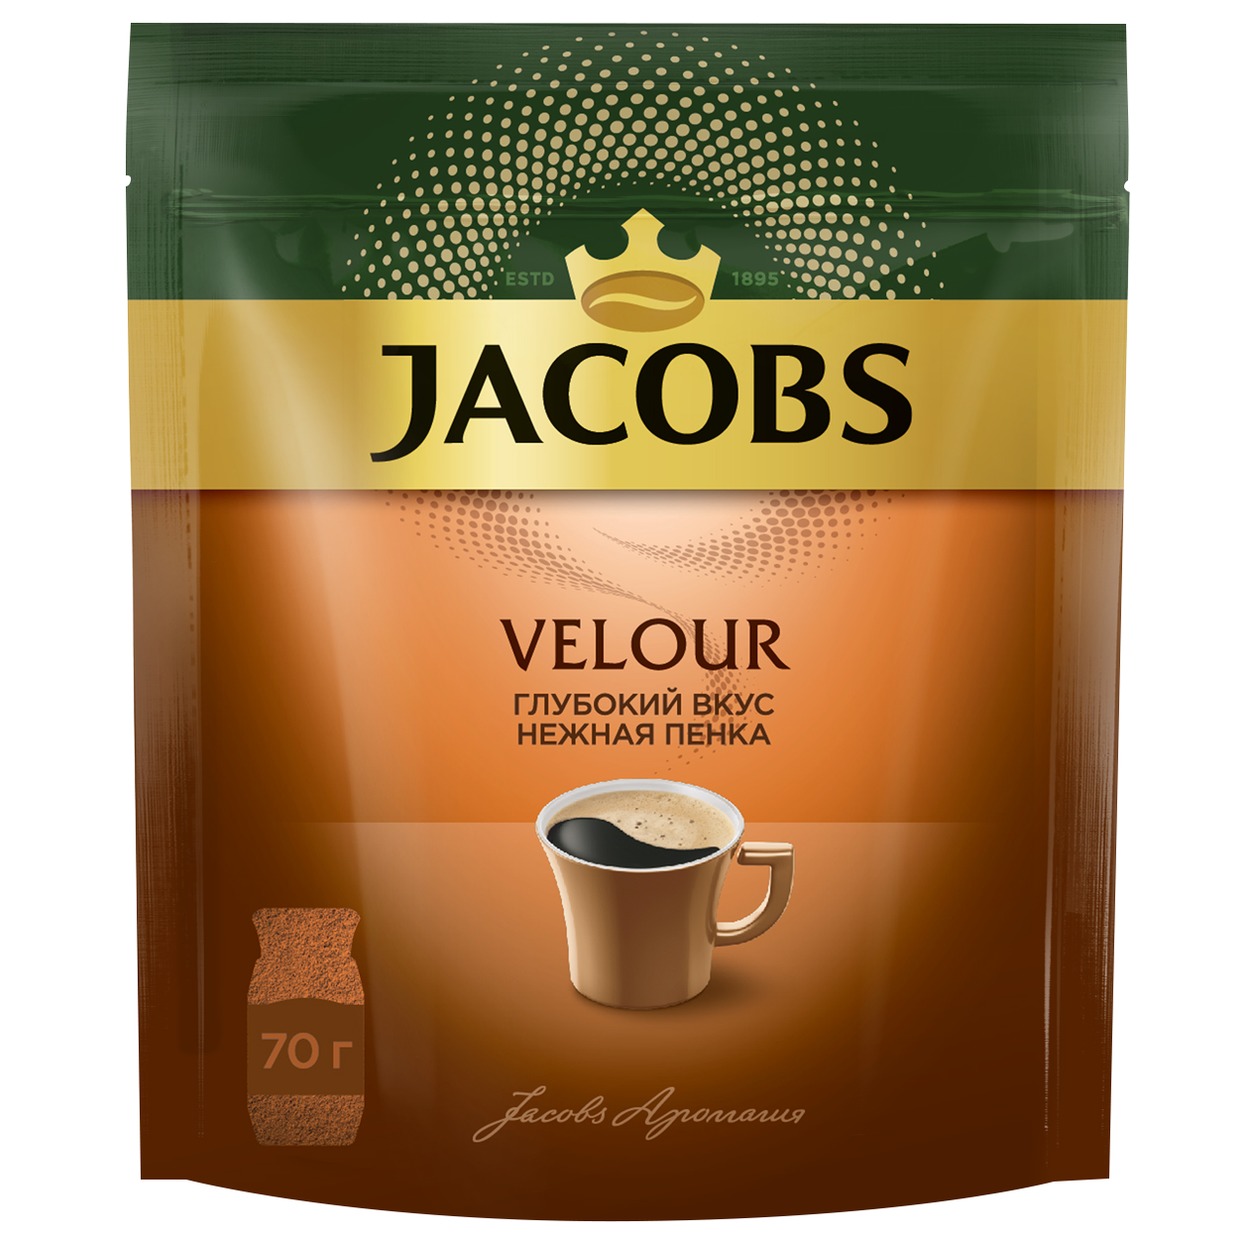 Кофе Jacobs Velour, растворимый, 70 г по акции в Пятерочке